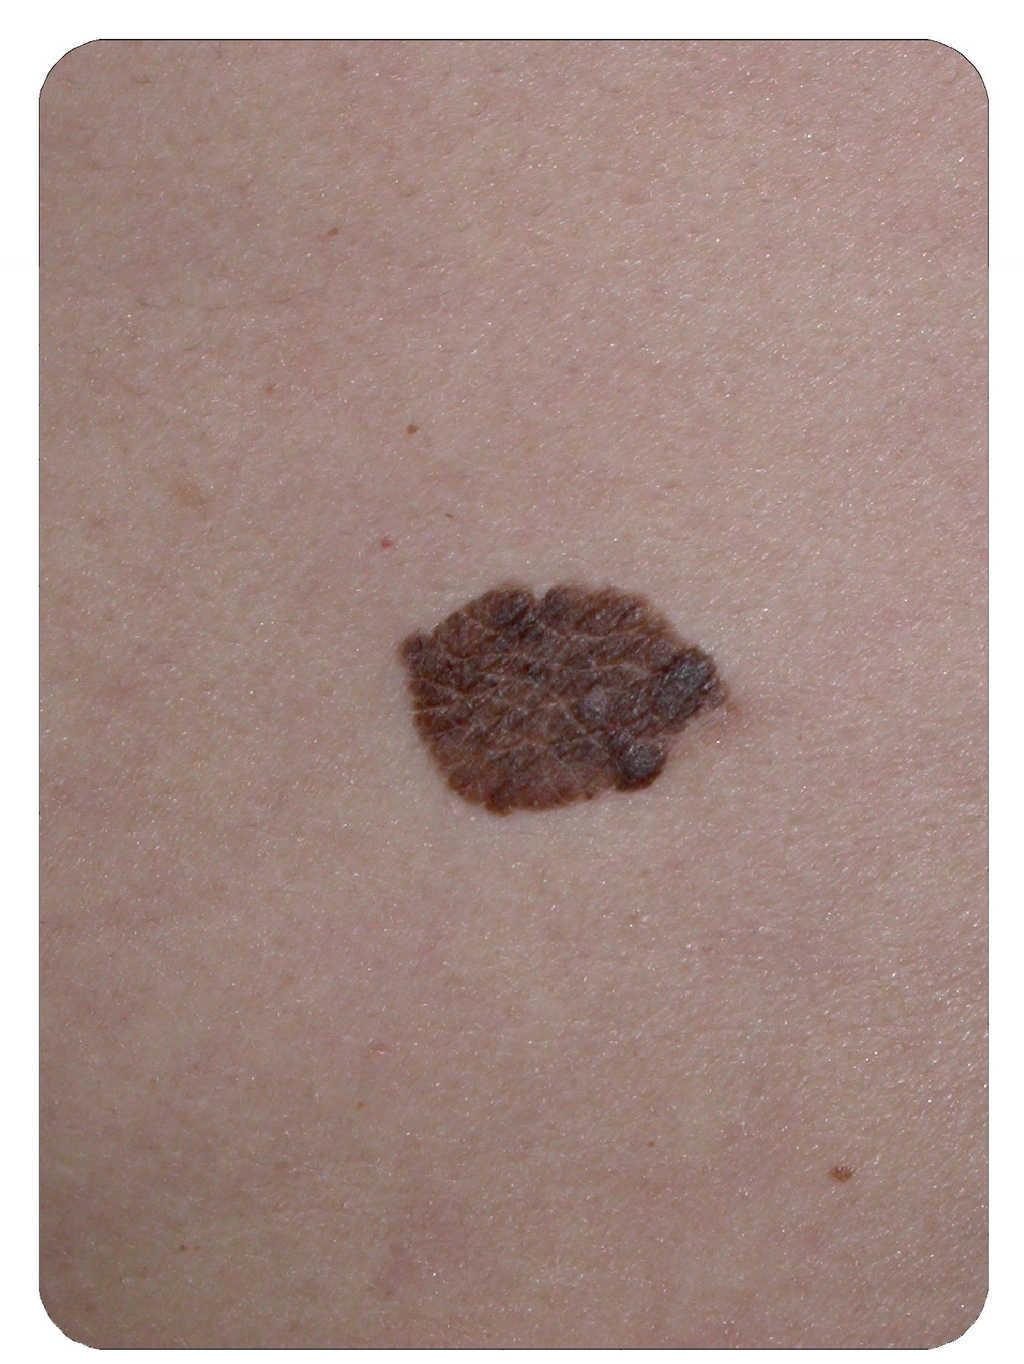 Papiloma en la piel tratamiento - nucleus-mc.ro, Que son papilomas en la piel